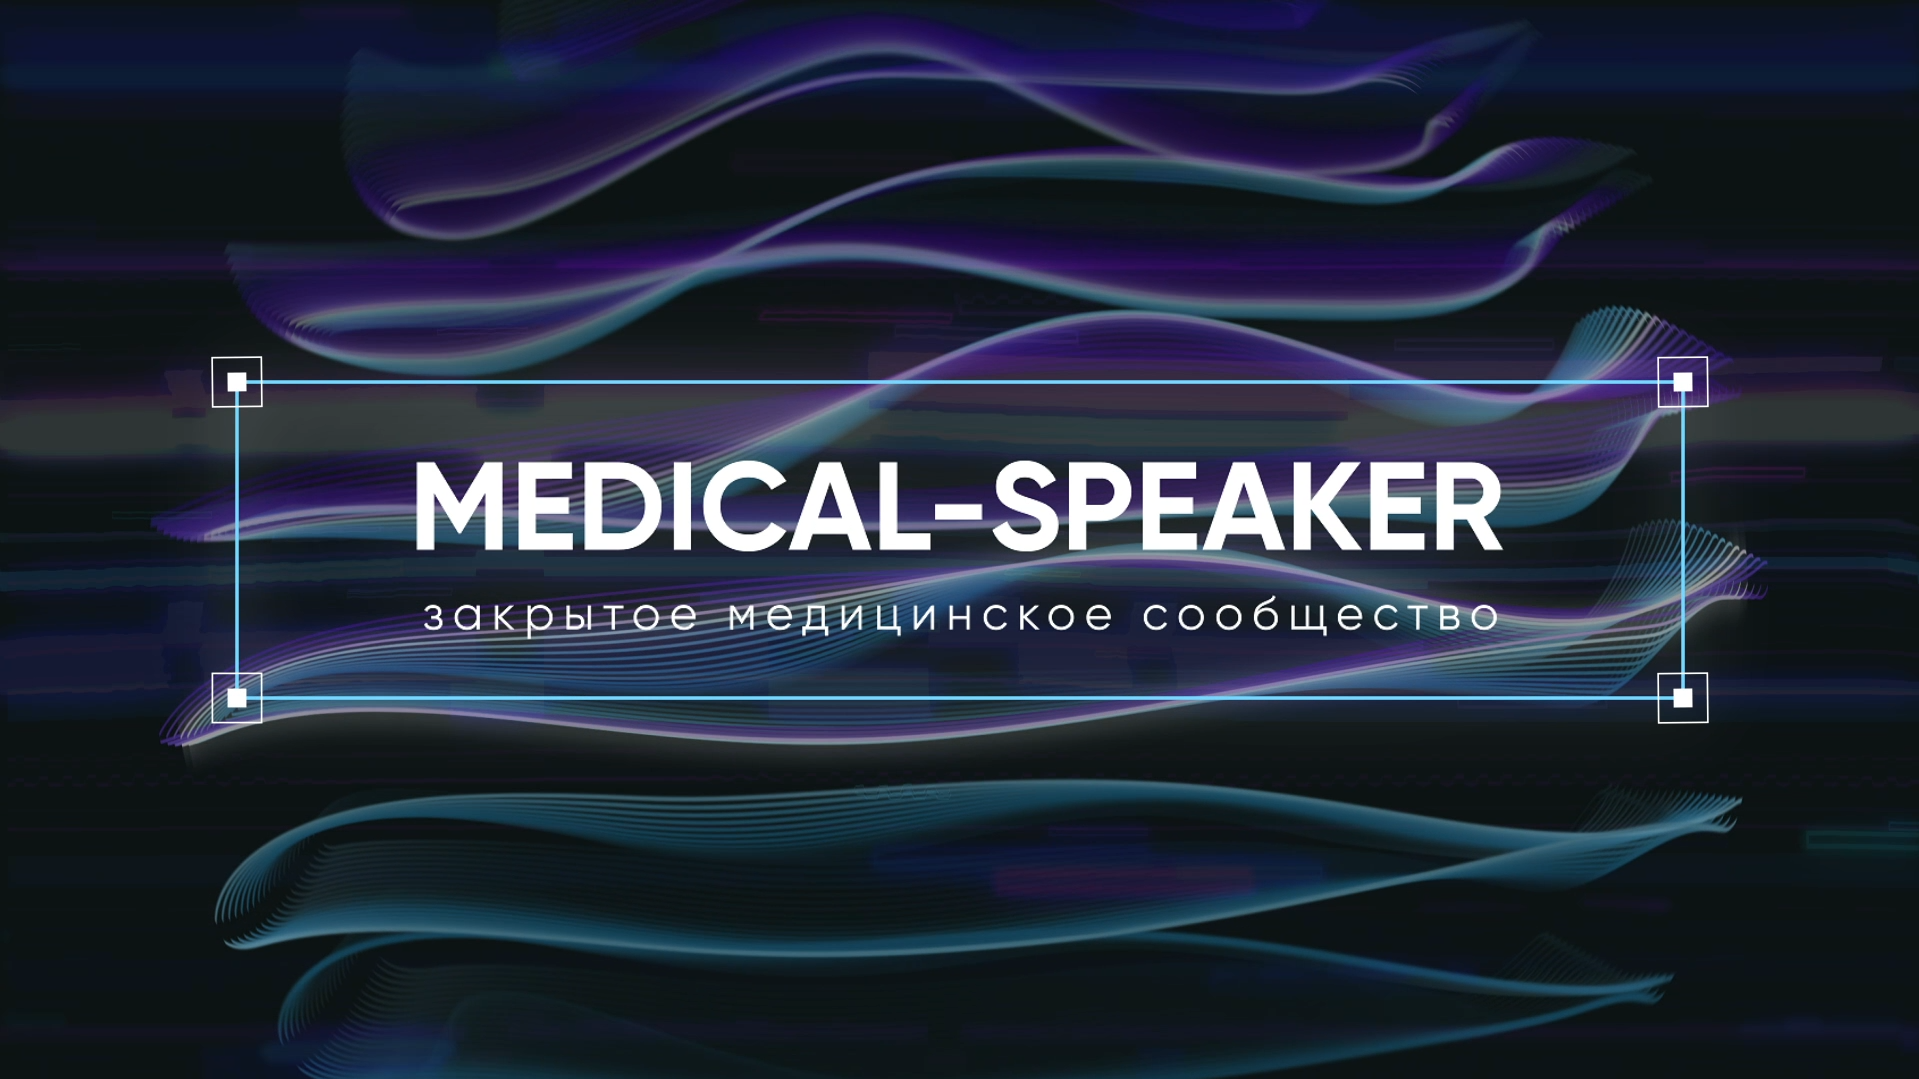 Medical-Speacker - Проморолик для медицинского сообщества